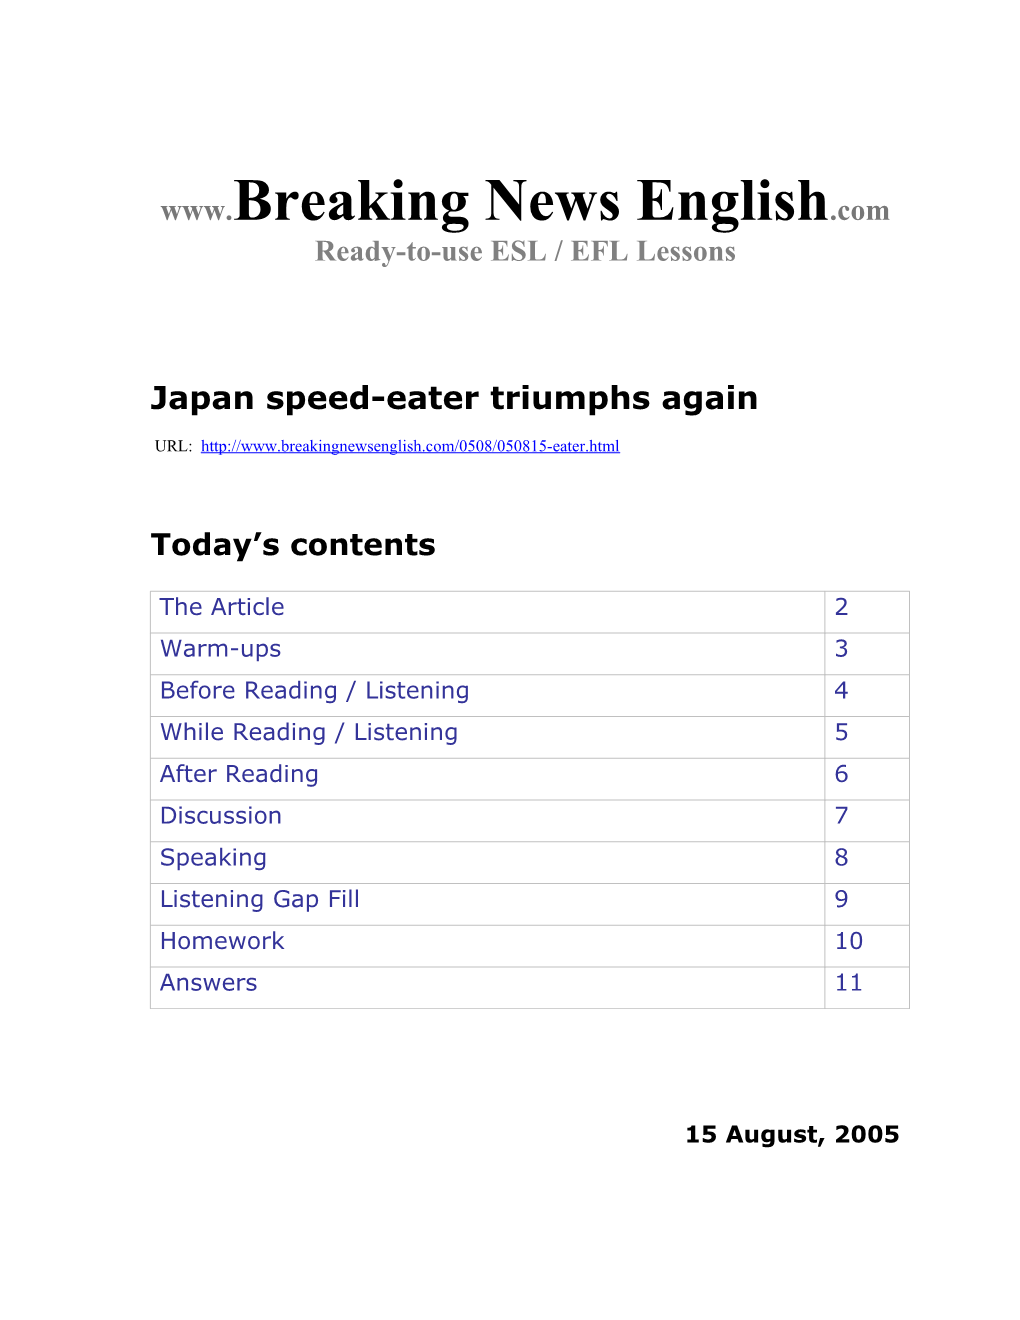 Japan Speed-Eater Triumphs Again